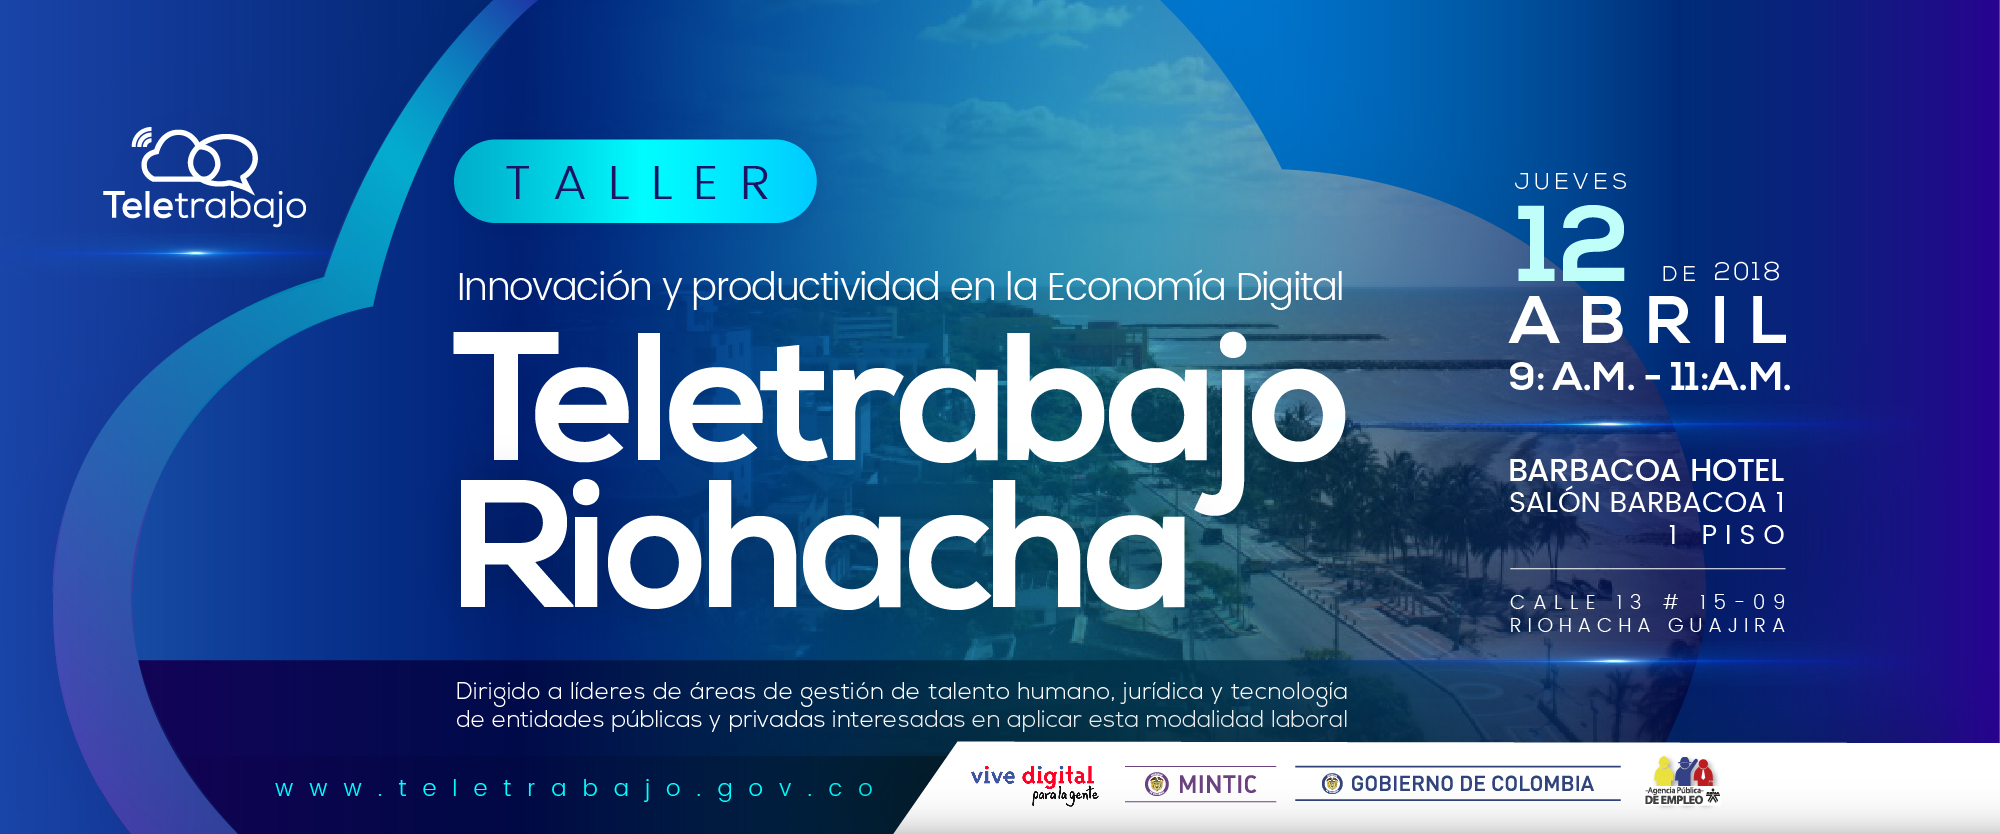 En Riohacha se dictará un taller sobre Teletrabajo